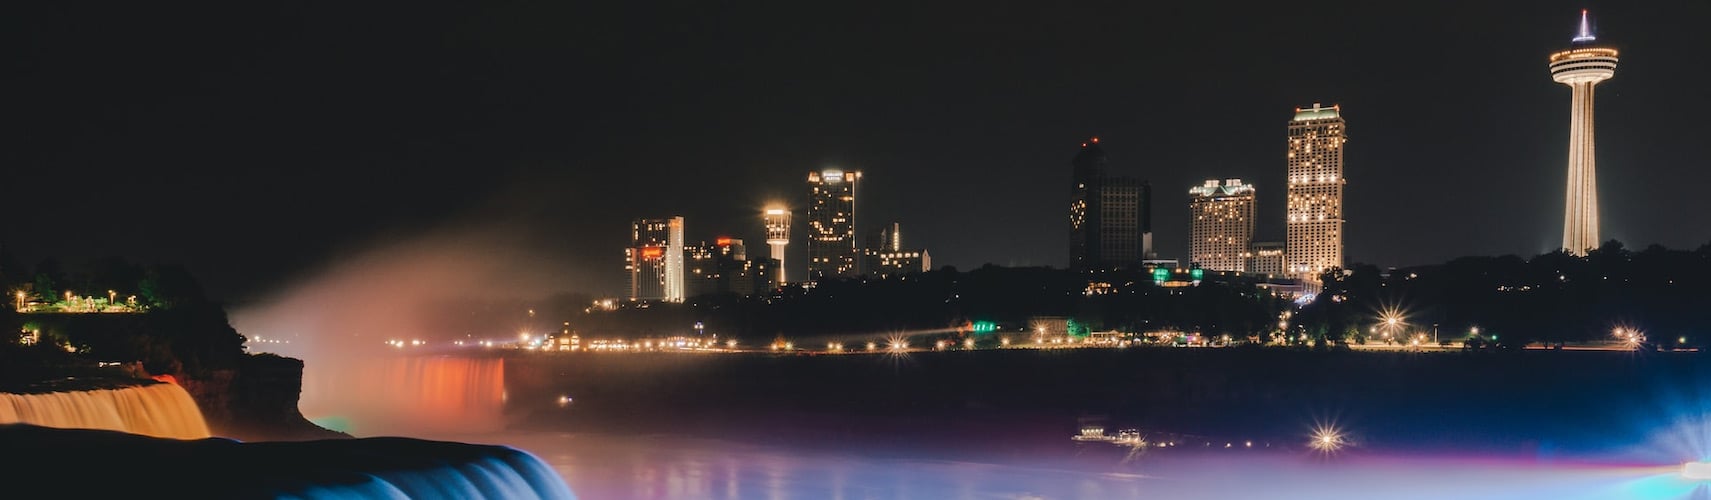 Niagarafälle bei Nacht mit der Skyline der Stadt im Hintergrund